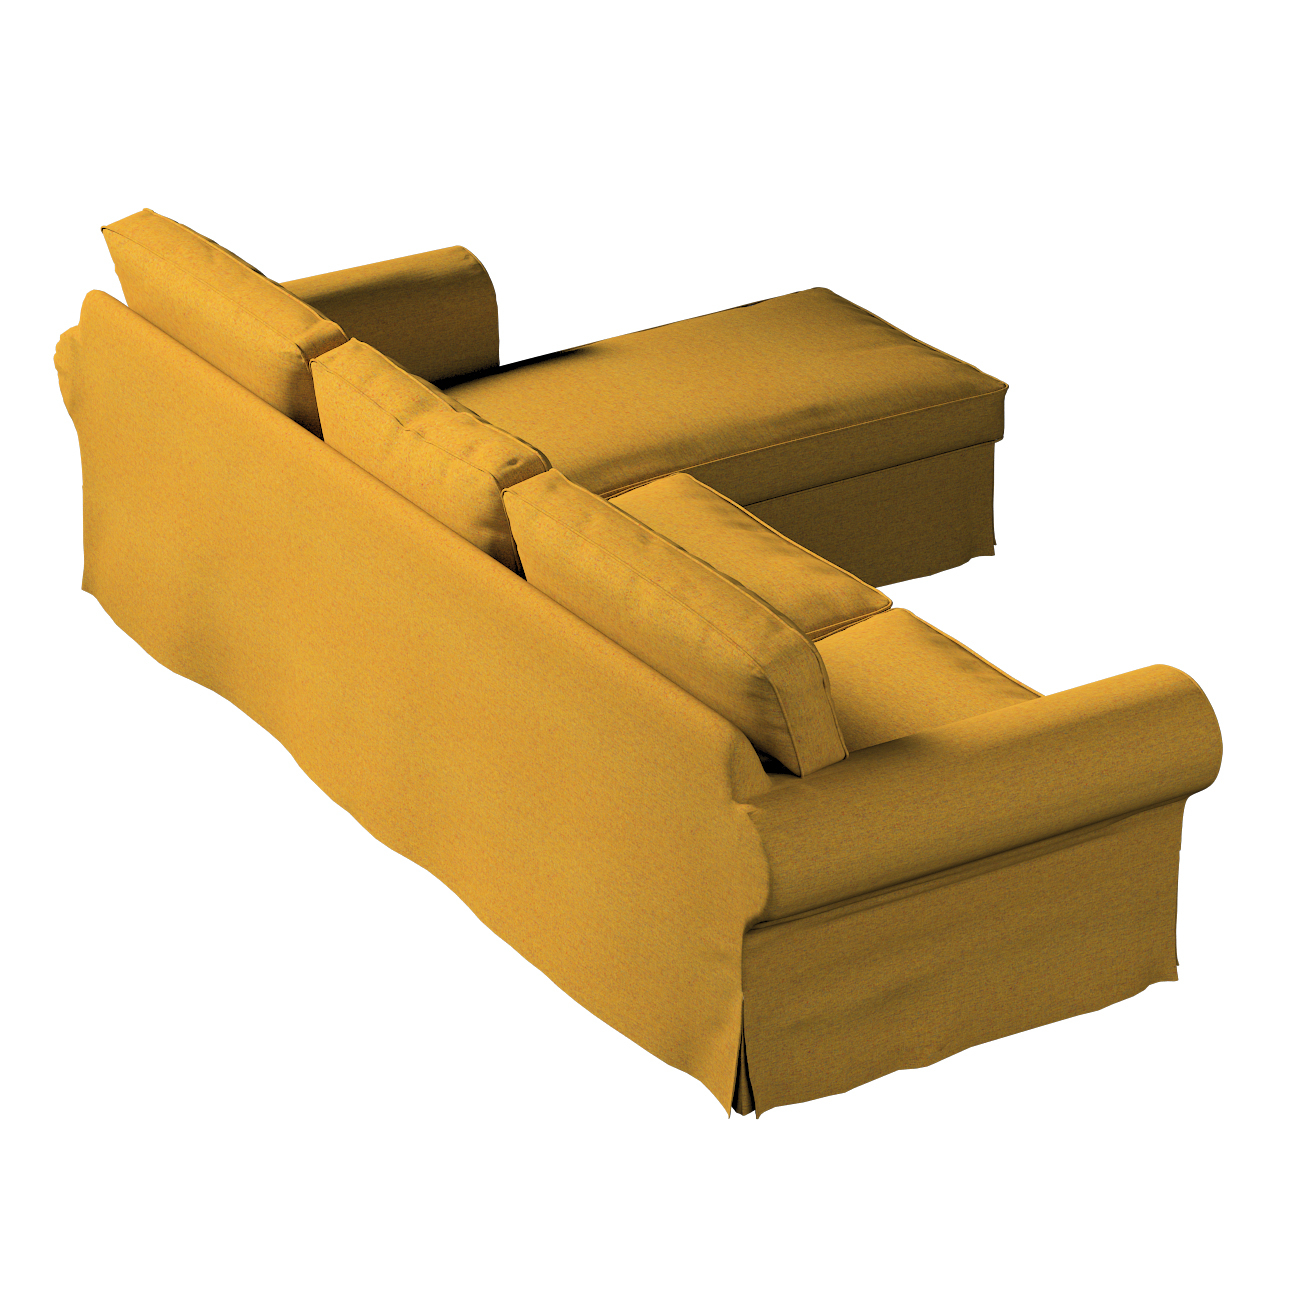 Bezug für Ektorp 2-Sitzer Sofa mit Recamiere, gelb, Ektorp 2-Sitzer Sofabez günstig online kaufen